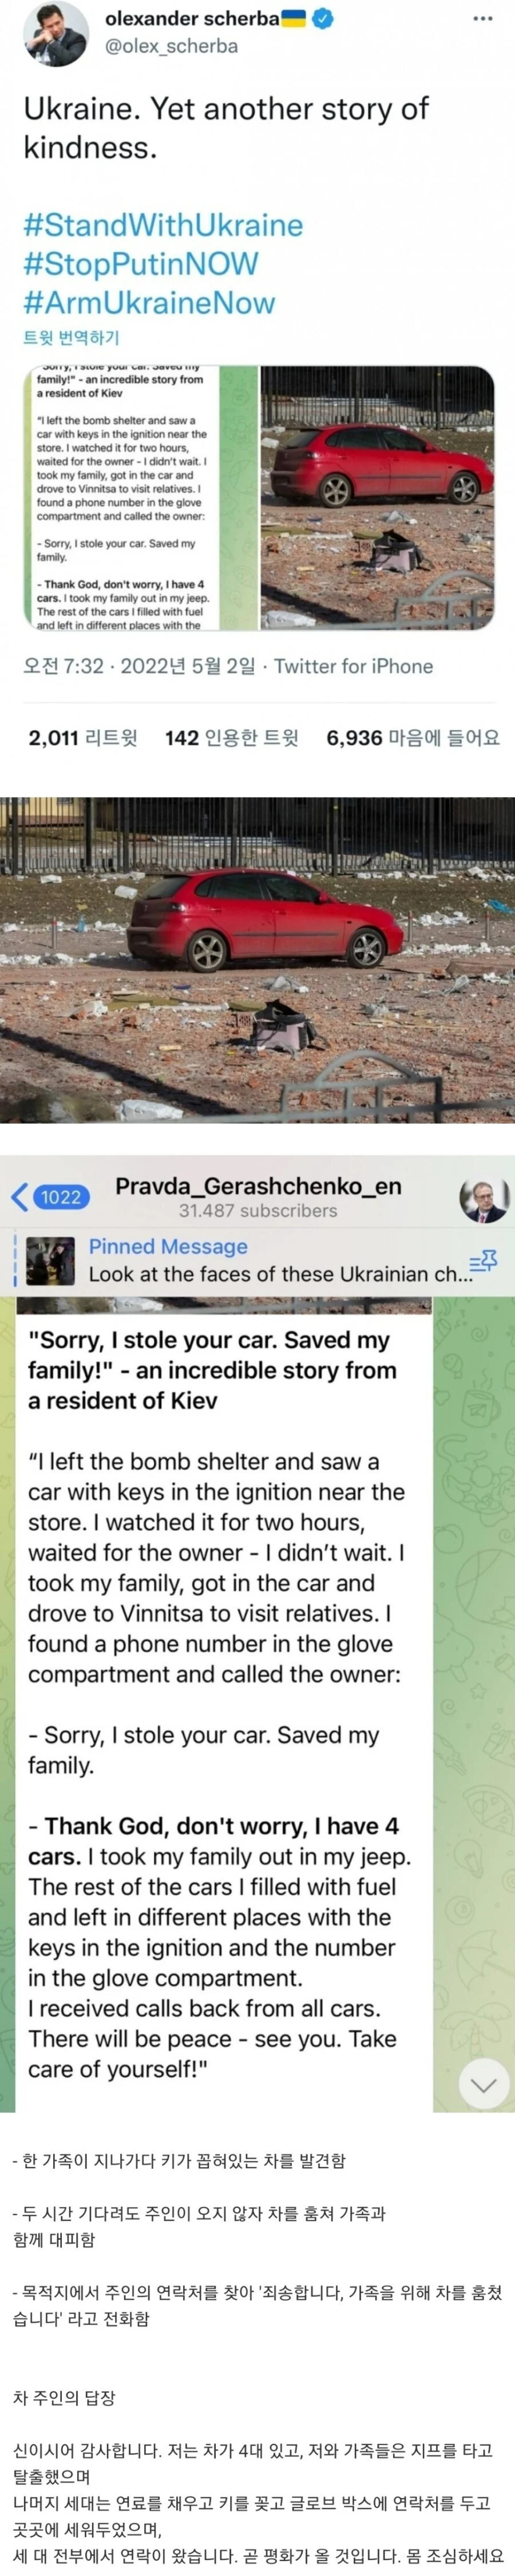 차를 훔친 우크라이나 가족